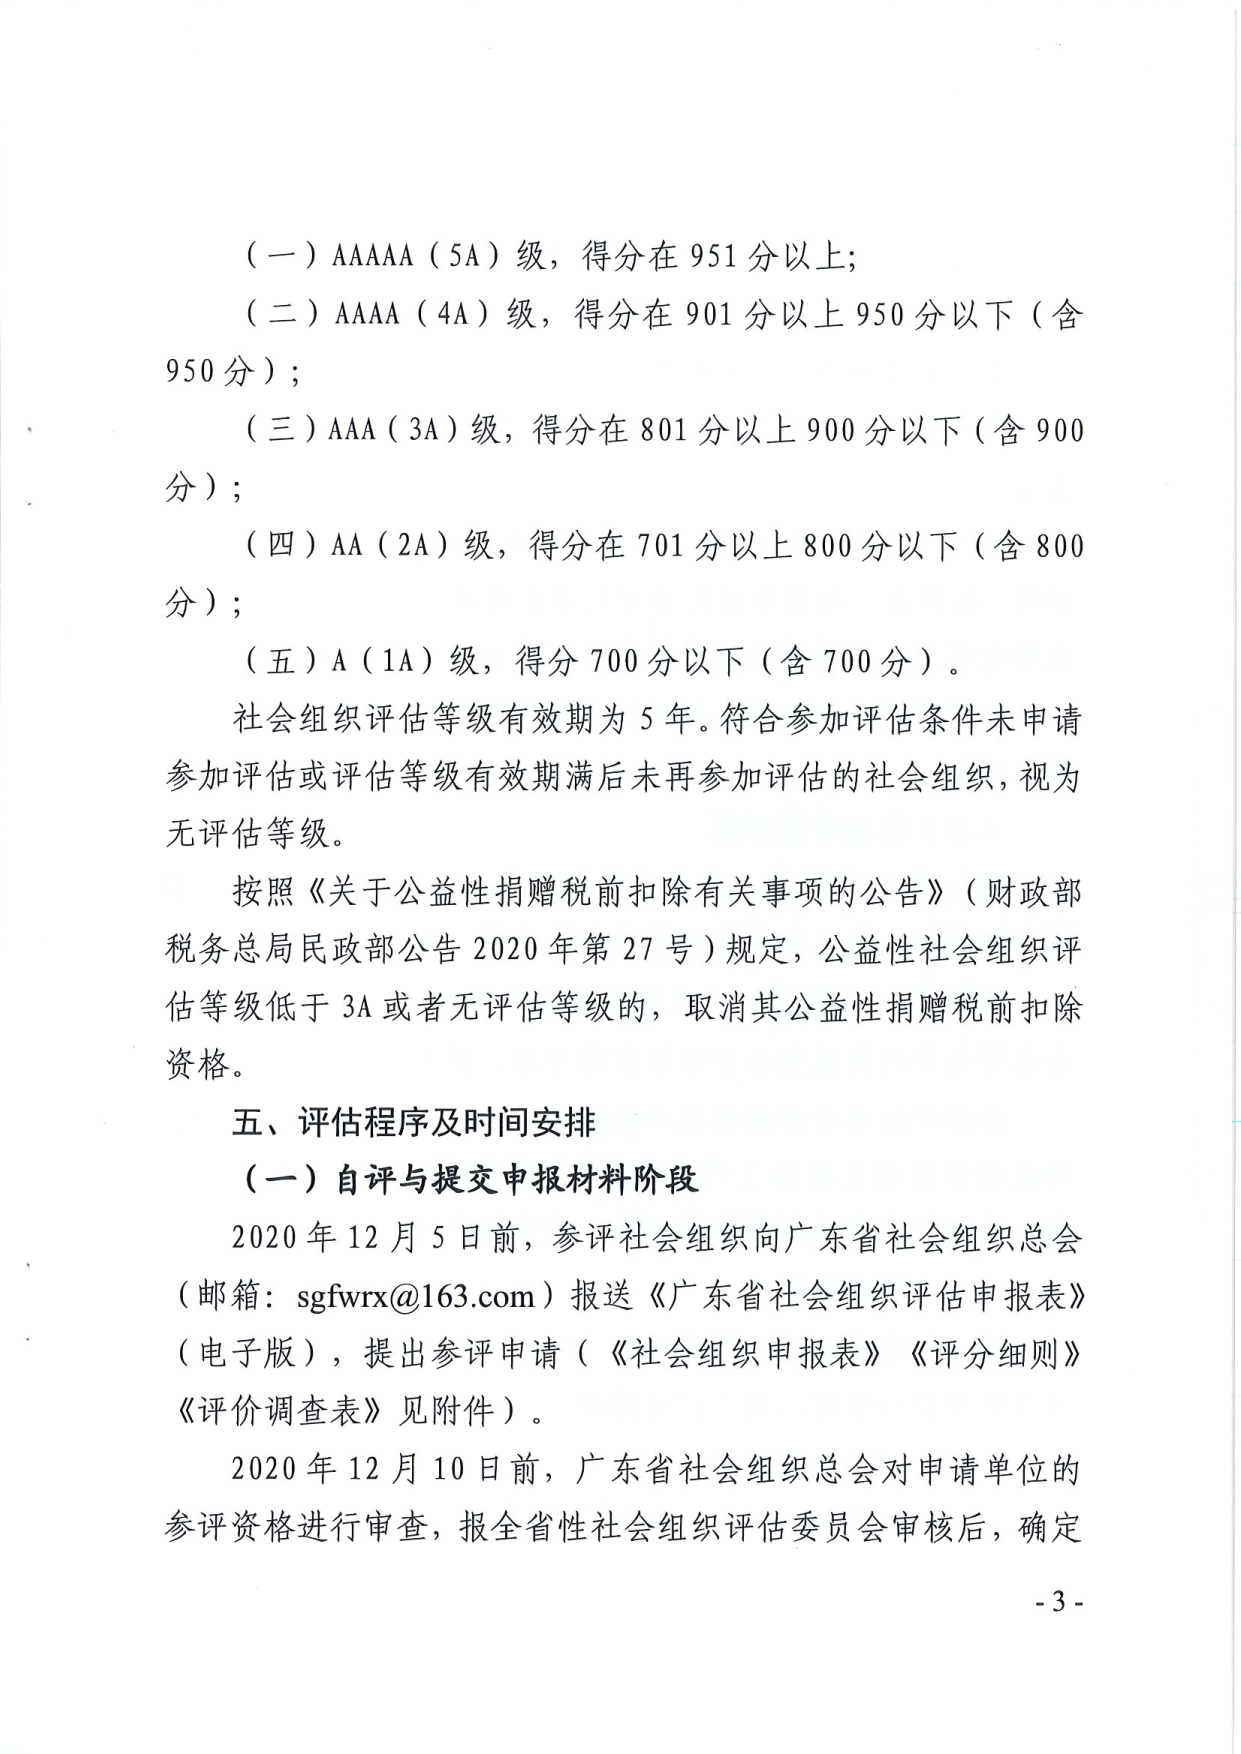 广东省民政厅关于开展2020年度全省性社会组织评估工作的通知_3.png